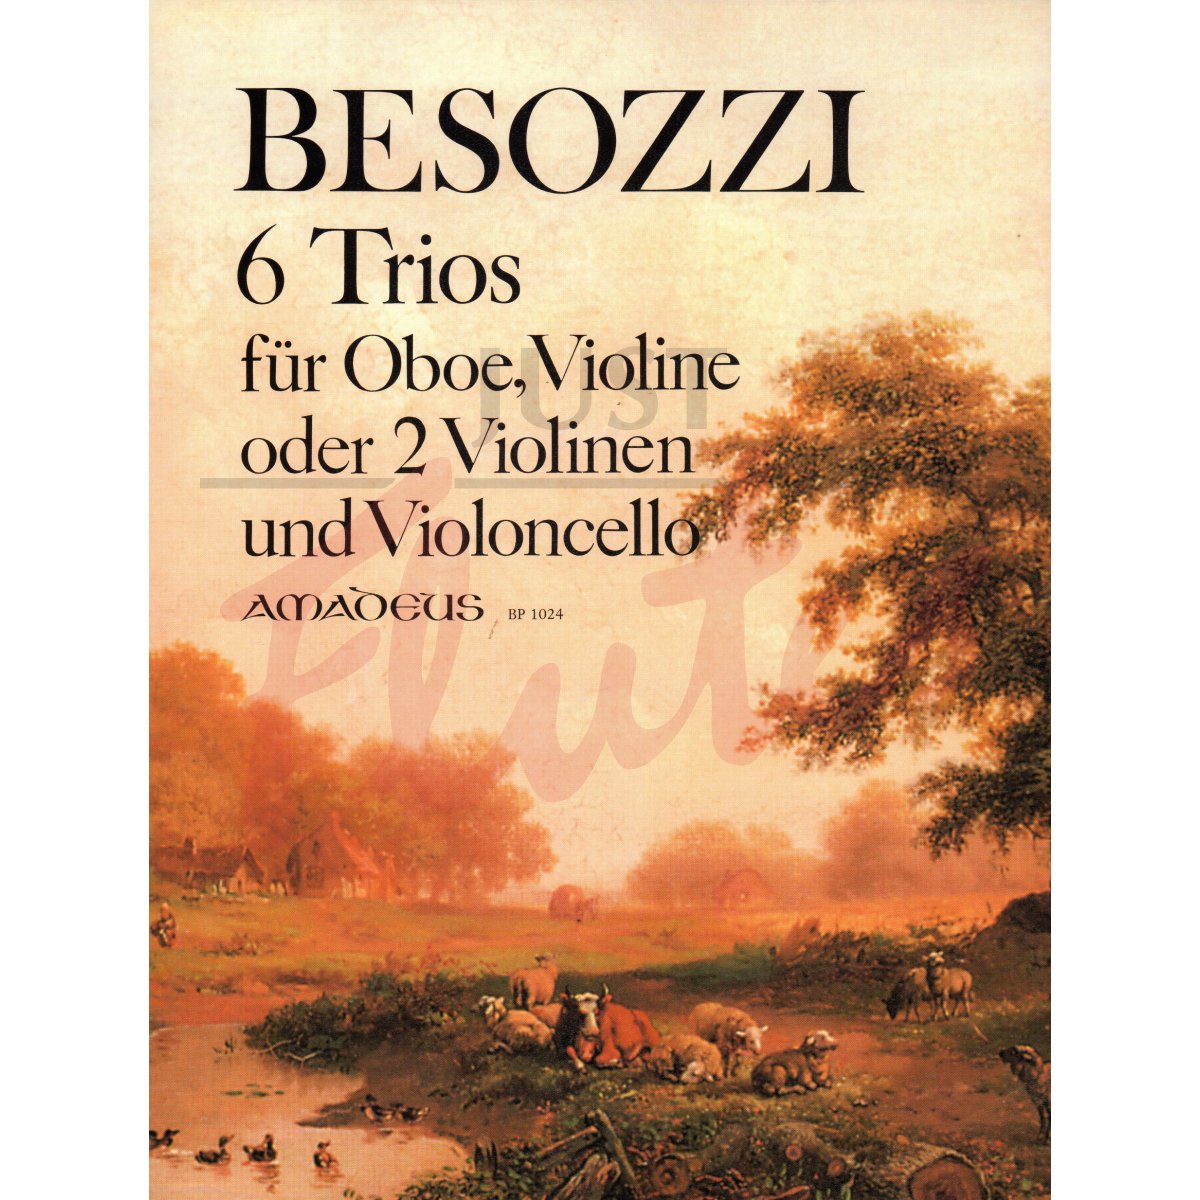 Six Trios for Oboe, Violin and Cello